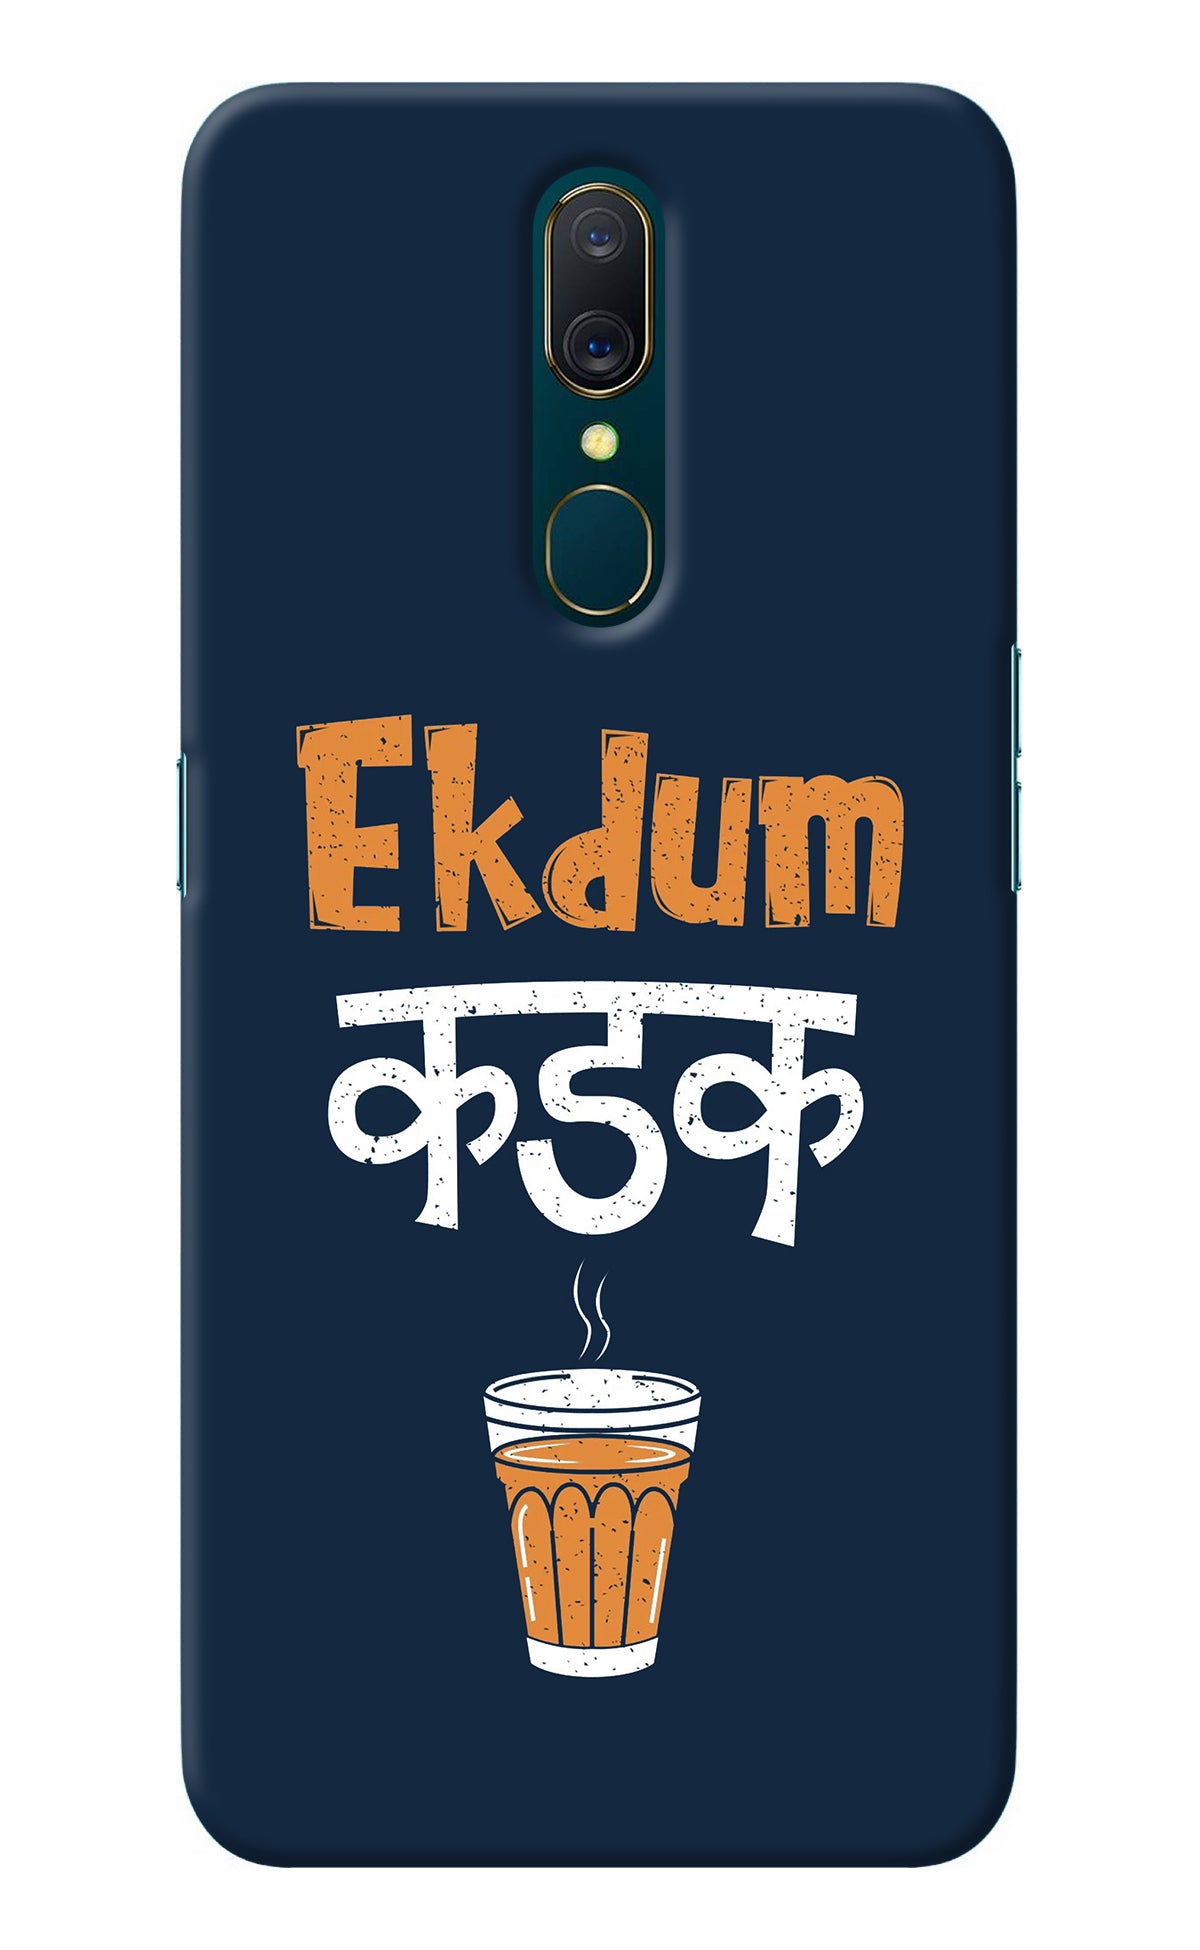 Ekdum Kadak Chai Oppo A9 Back Cover